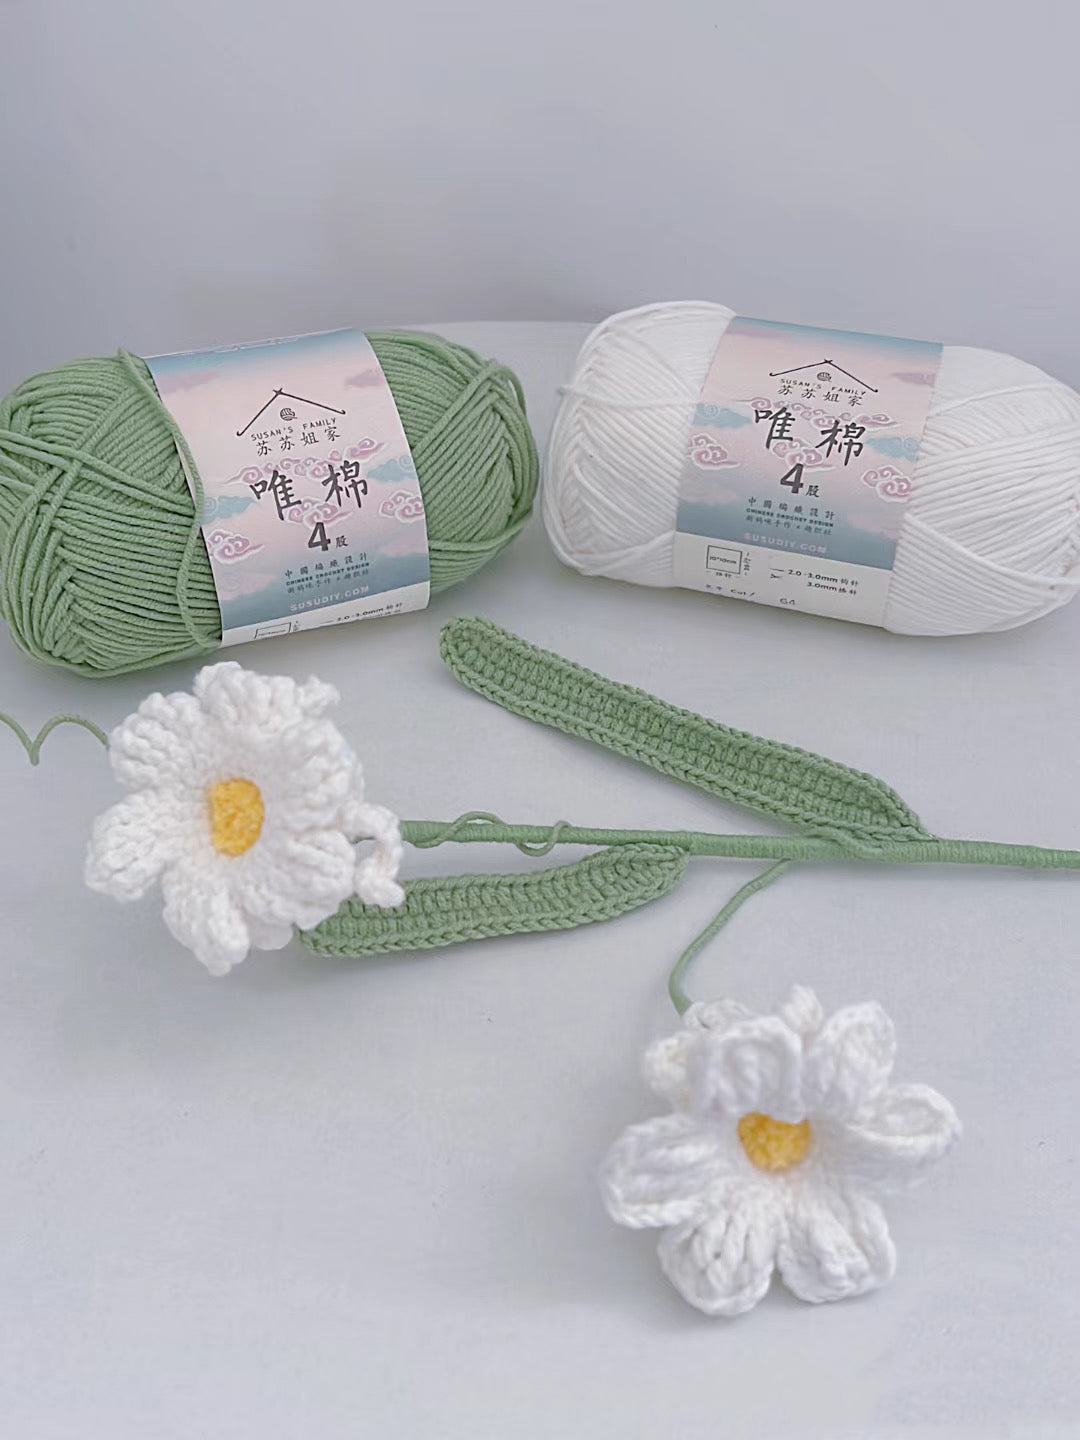 Patrón de crochet Narciso Peruano y video tutorial, patrón pdf en inglés, ramo de flores DIY, patrón de crochet para principiantes,lilyrosy